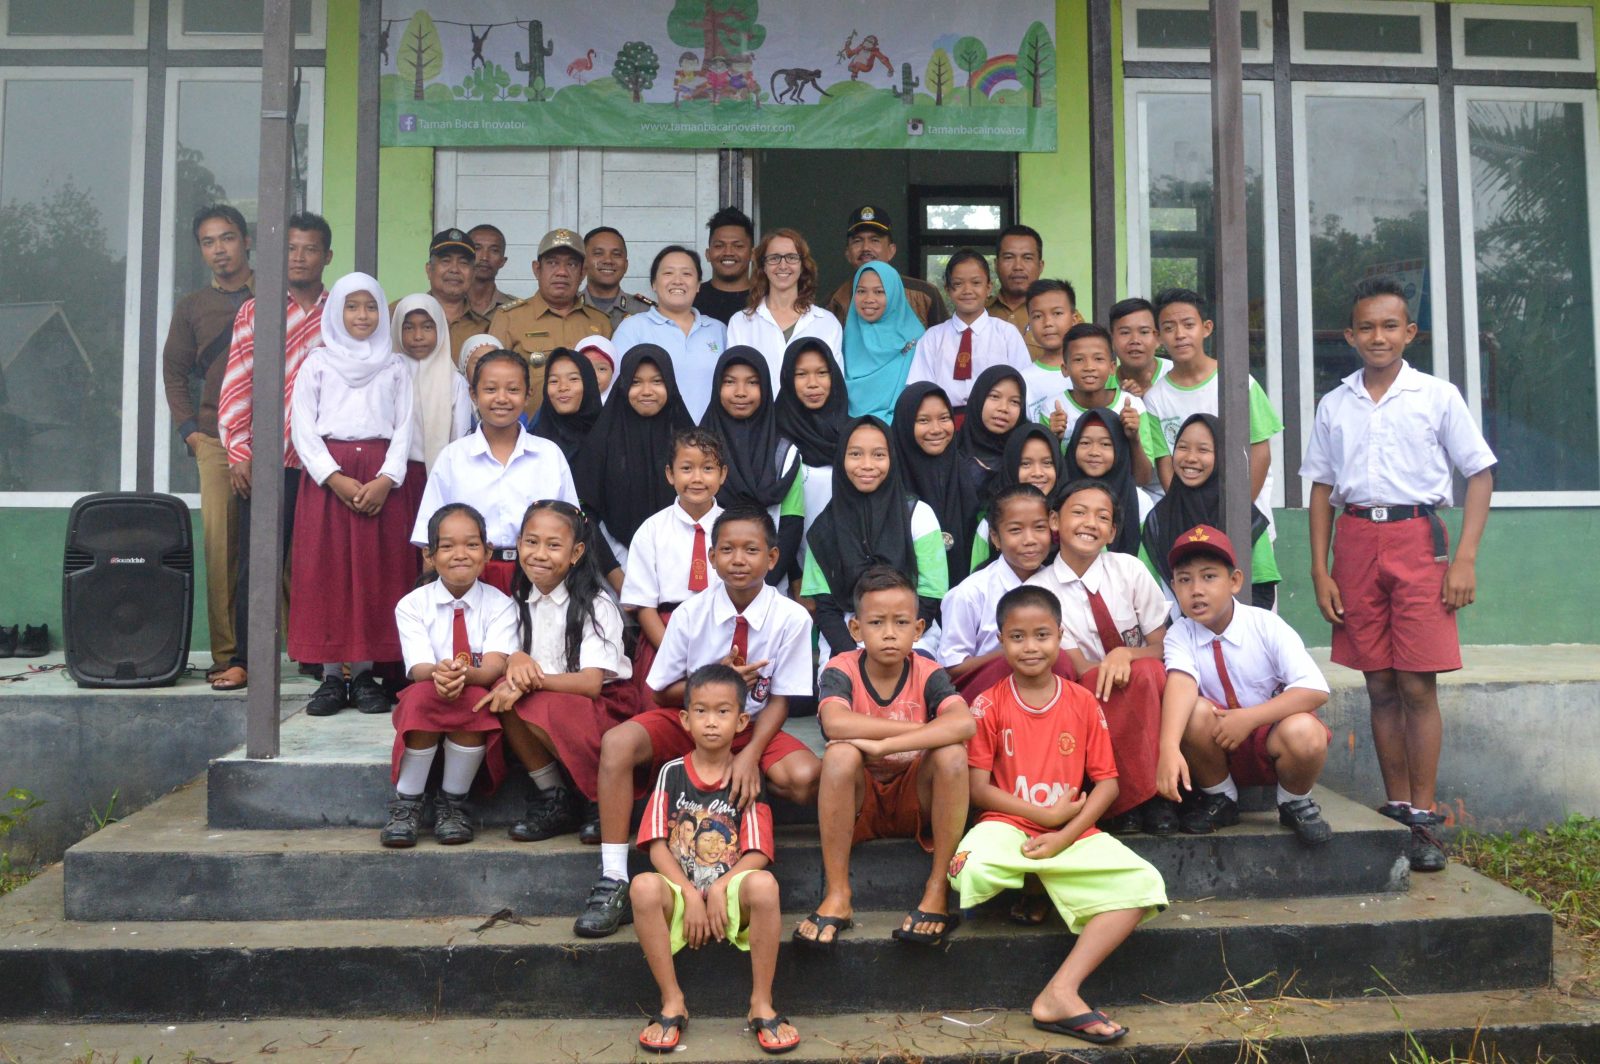 Kerja Sama International Animal Rescue (IAR) Indonesia  dengan Taman Baca Inovator (TBI) dalam Pembukaan Perpustakaan Masyarakat Pertama di Desa Pematang Gadung